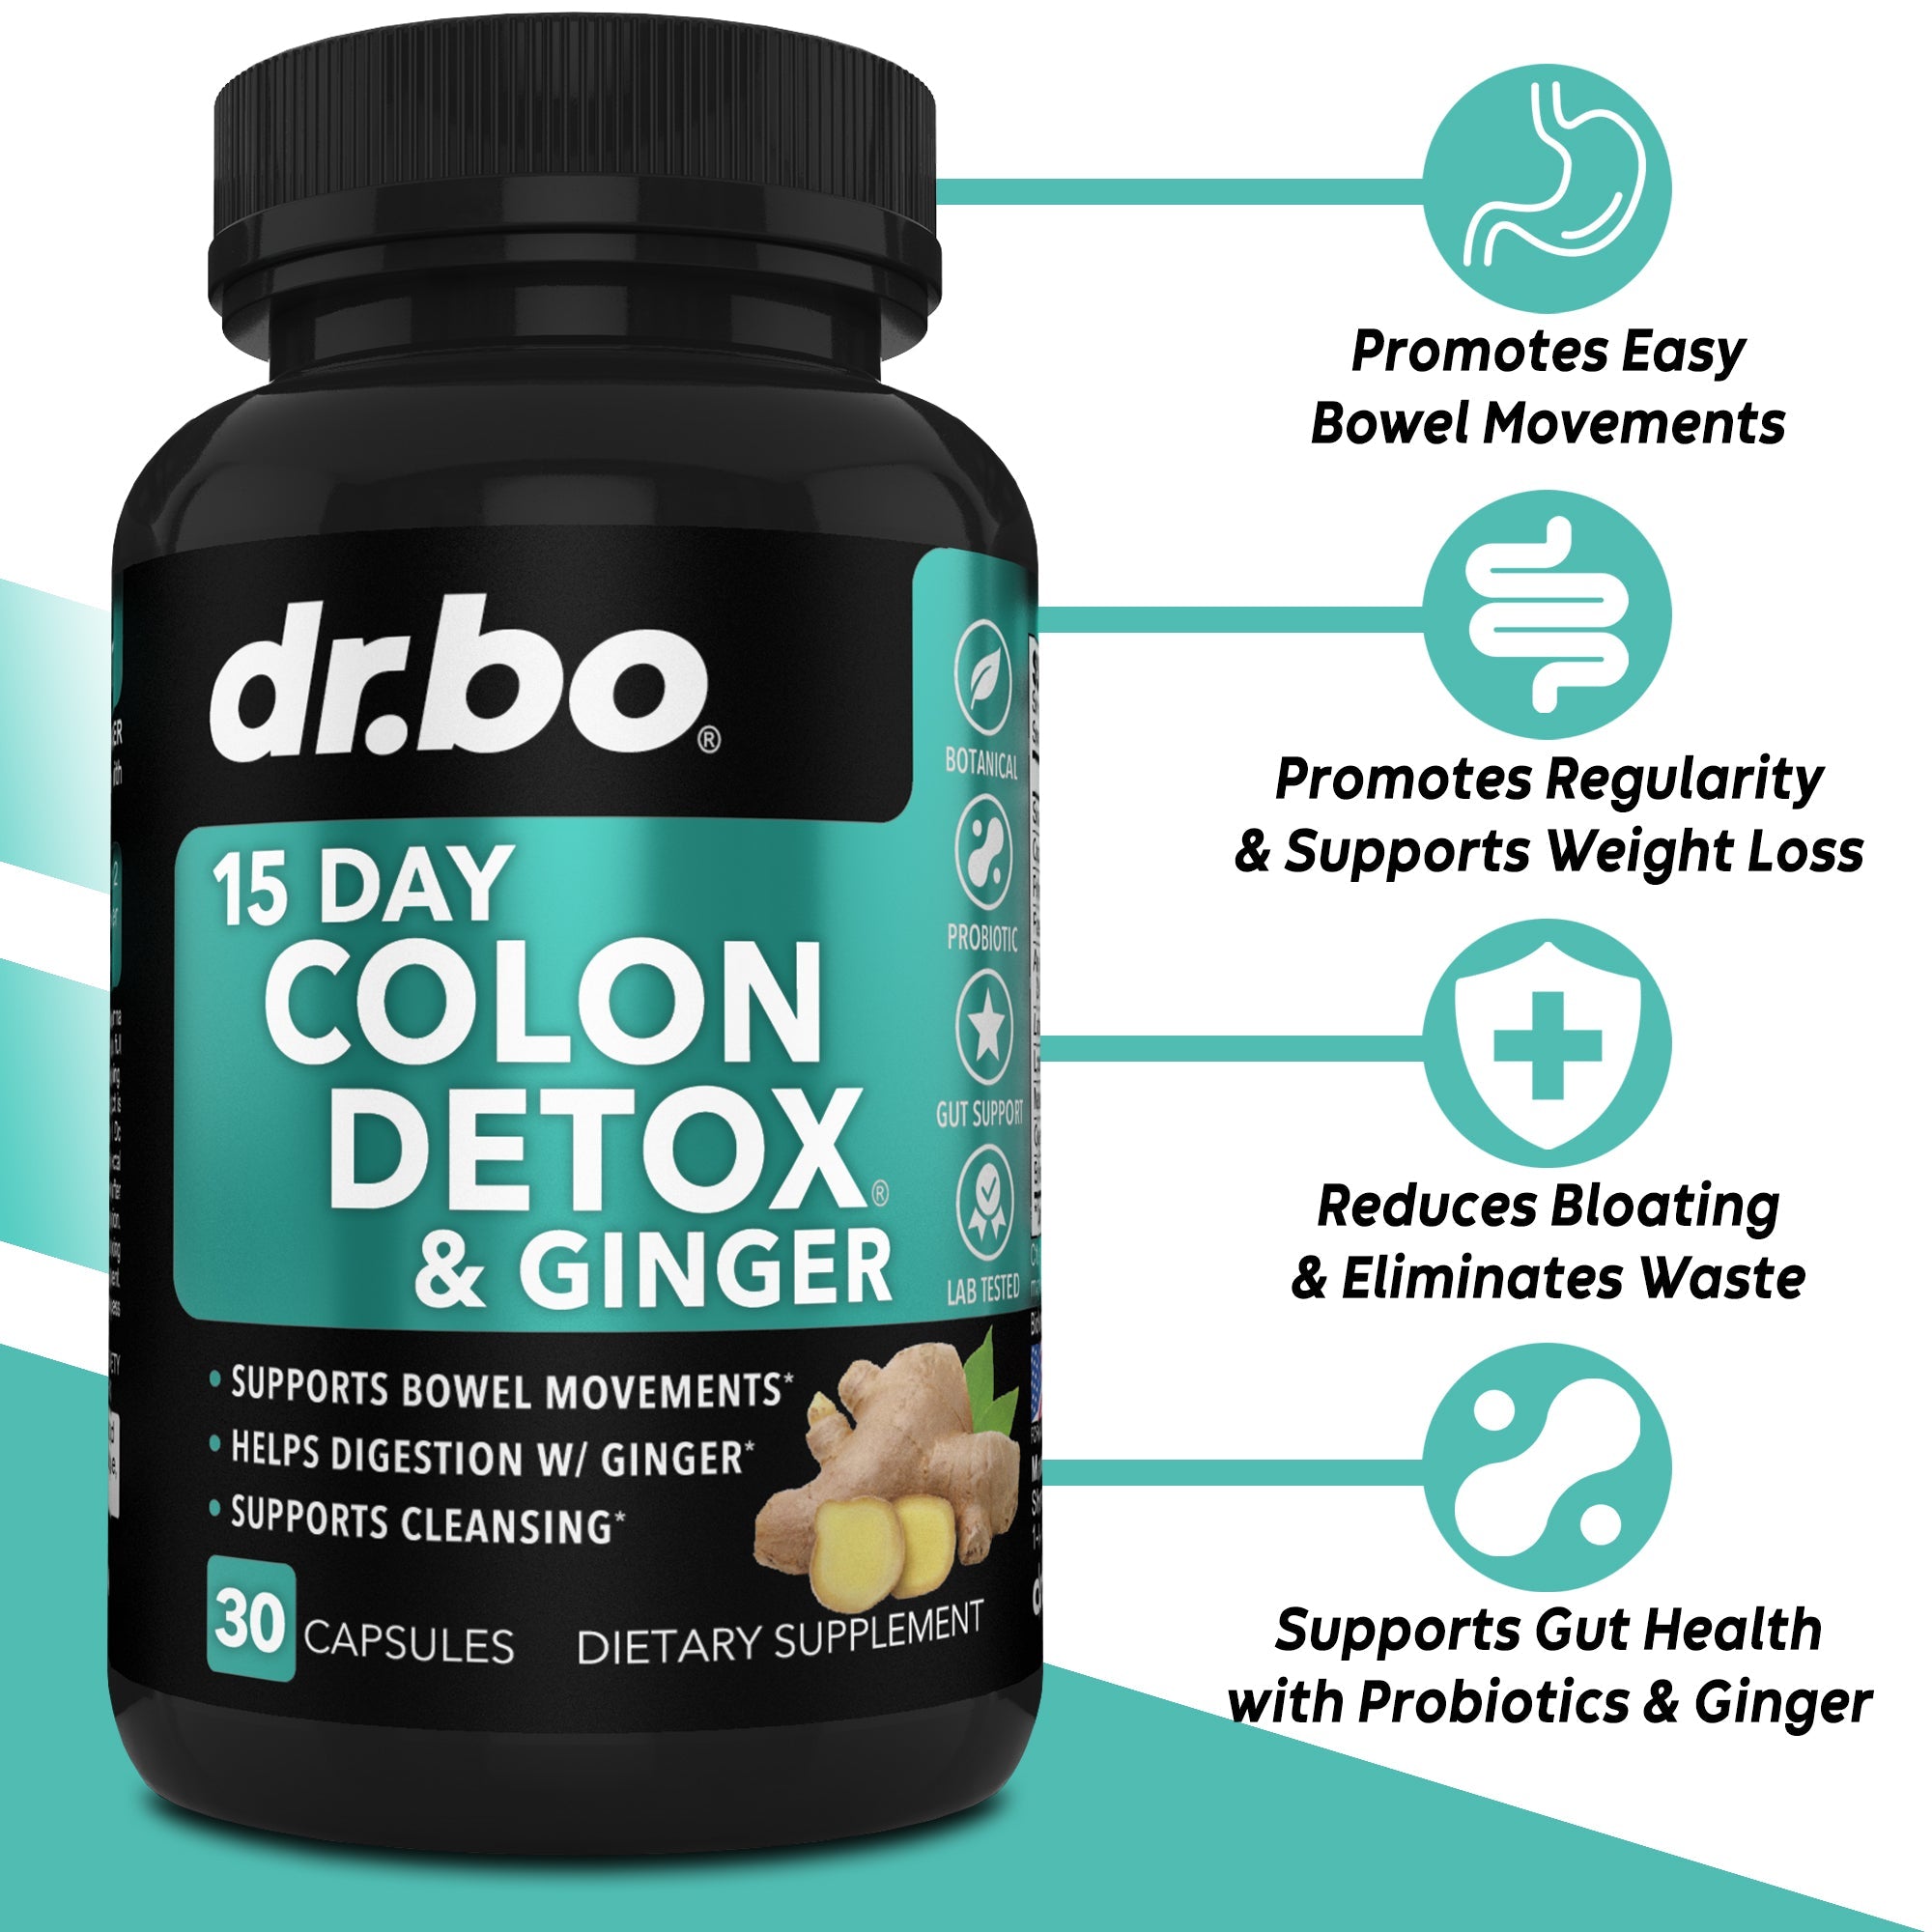 15 Day Colon Detox & Ginger